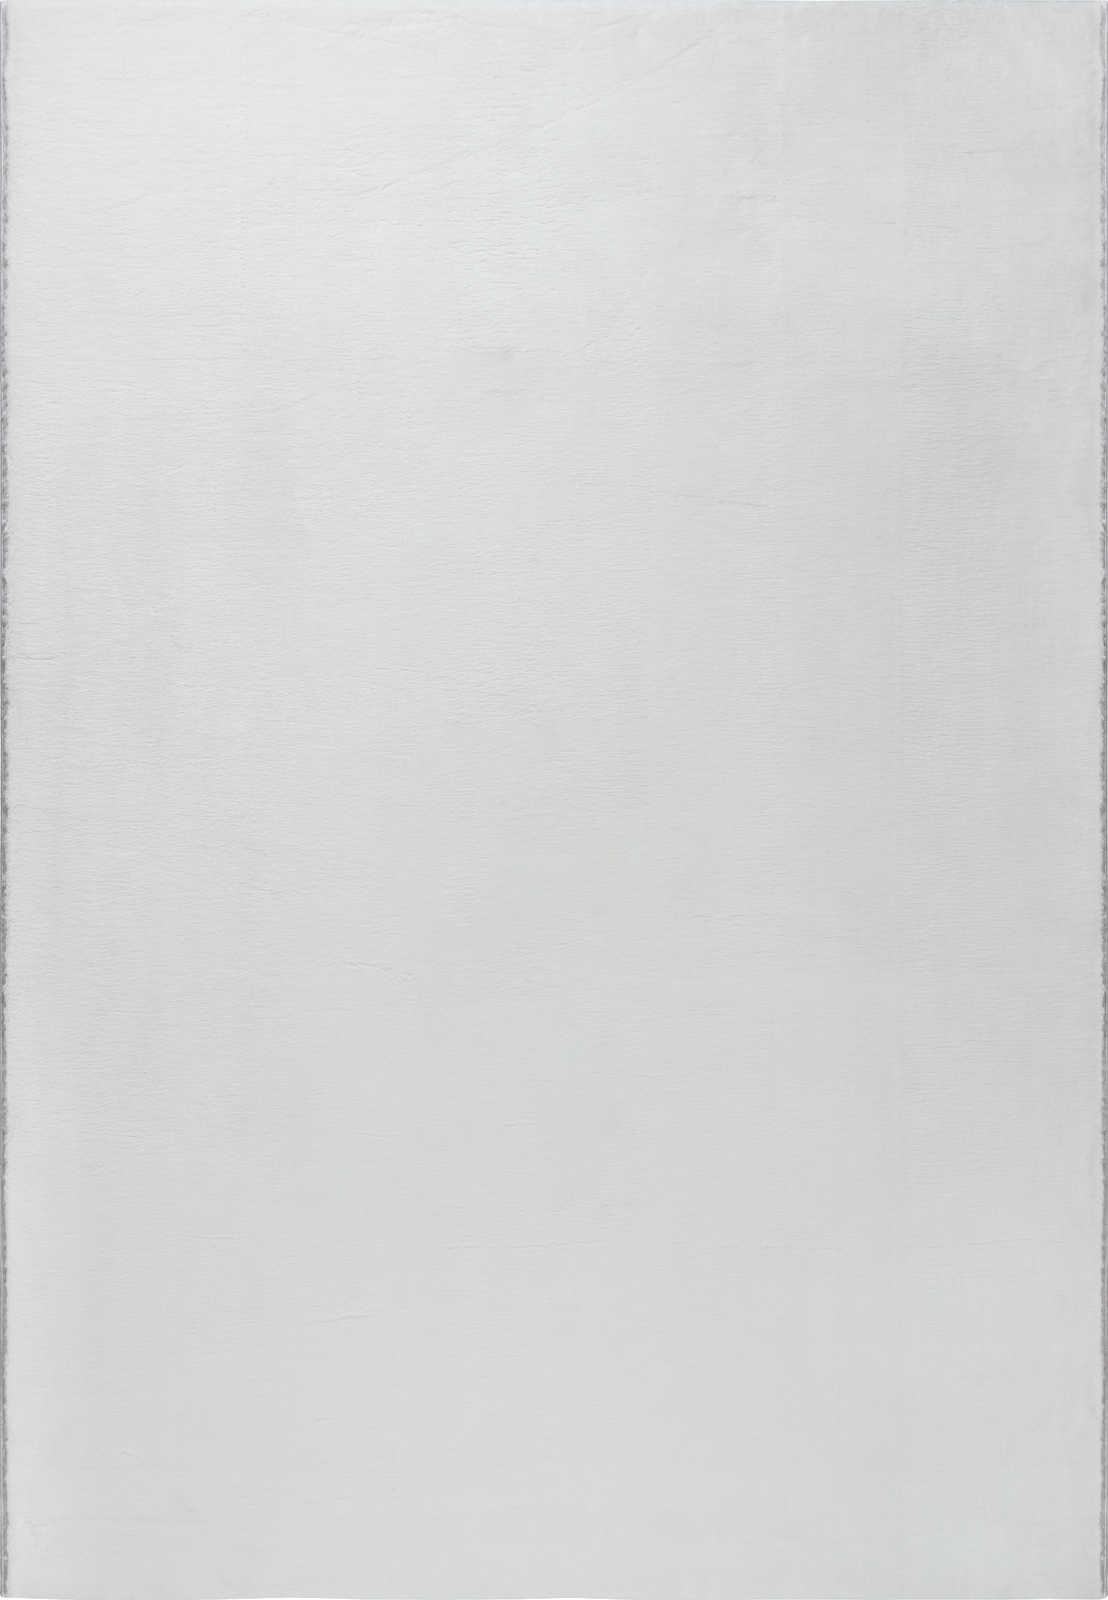             Flauschiger Hochflor Teppich in angenehmen Creme – 170 x 120 cm
        